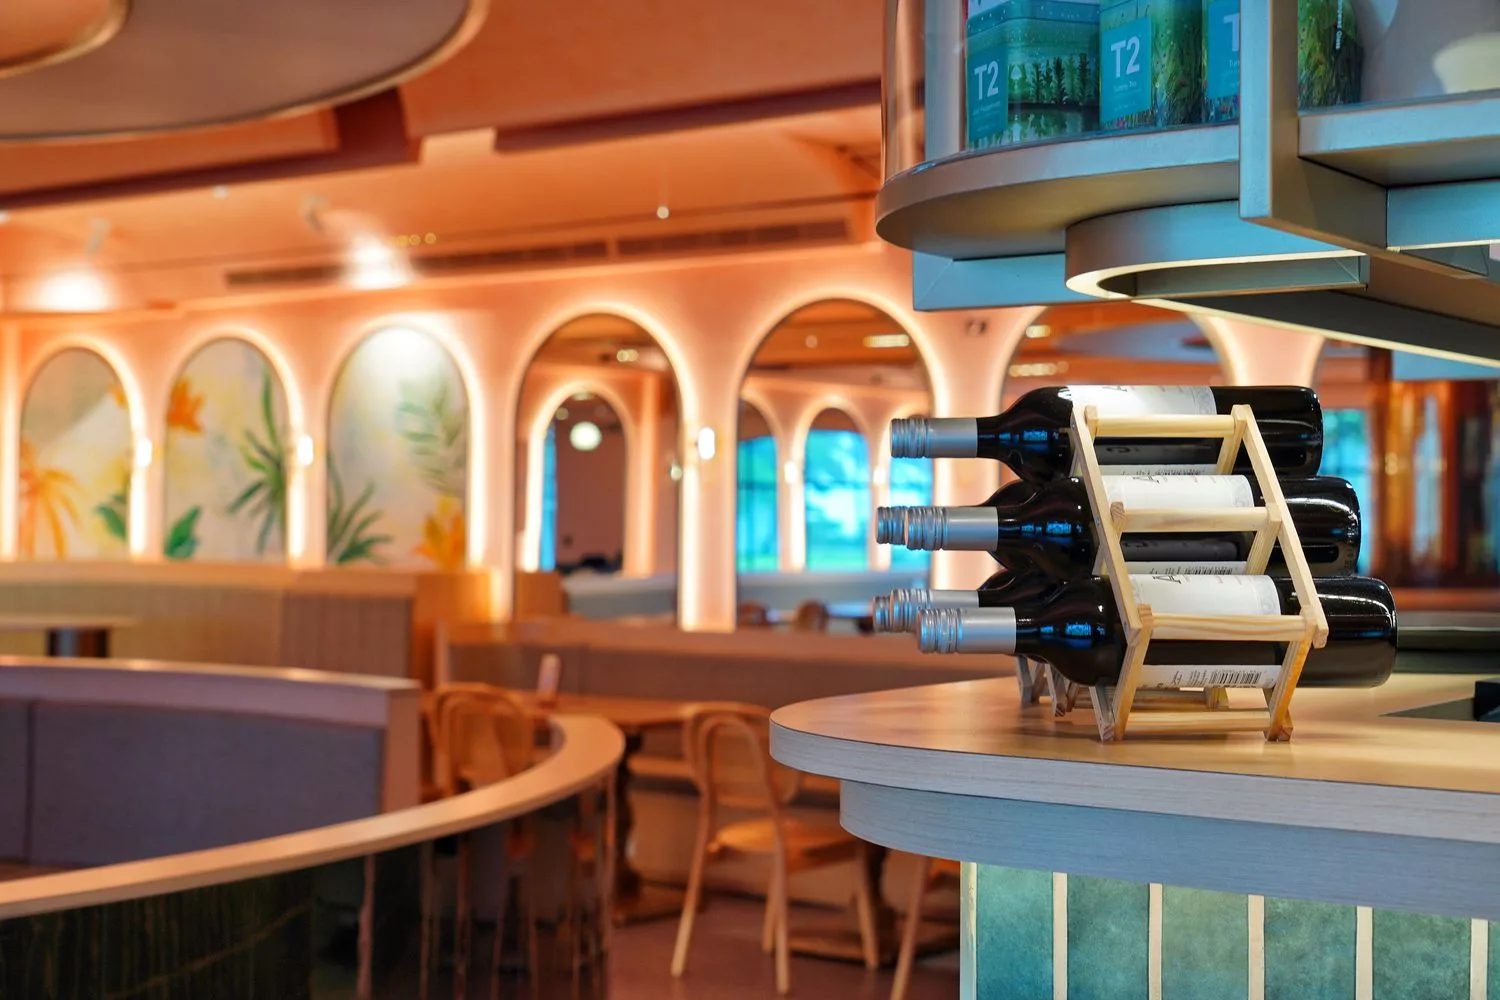 【諾薩餐酒館 Nossa bistro】墾丁大街新開幕夢幻海景餐廳! @混血珊莎的奇幻旅程